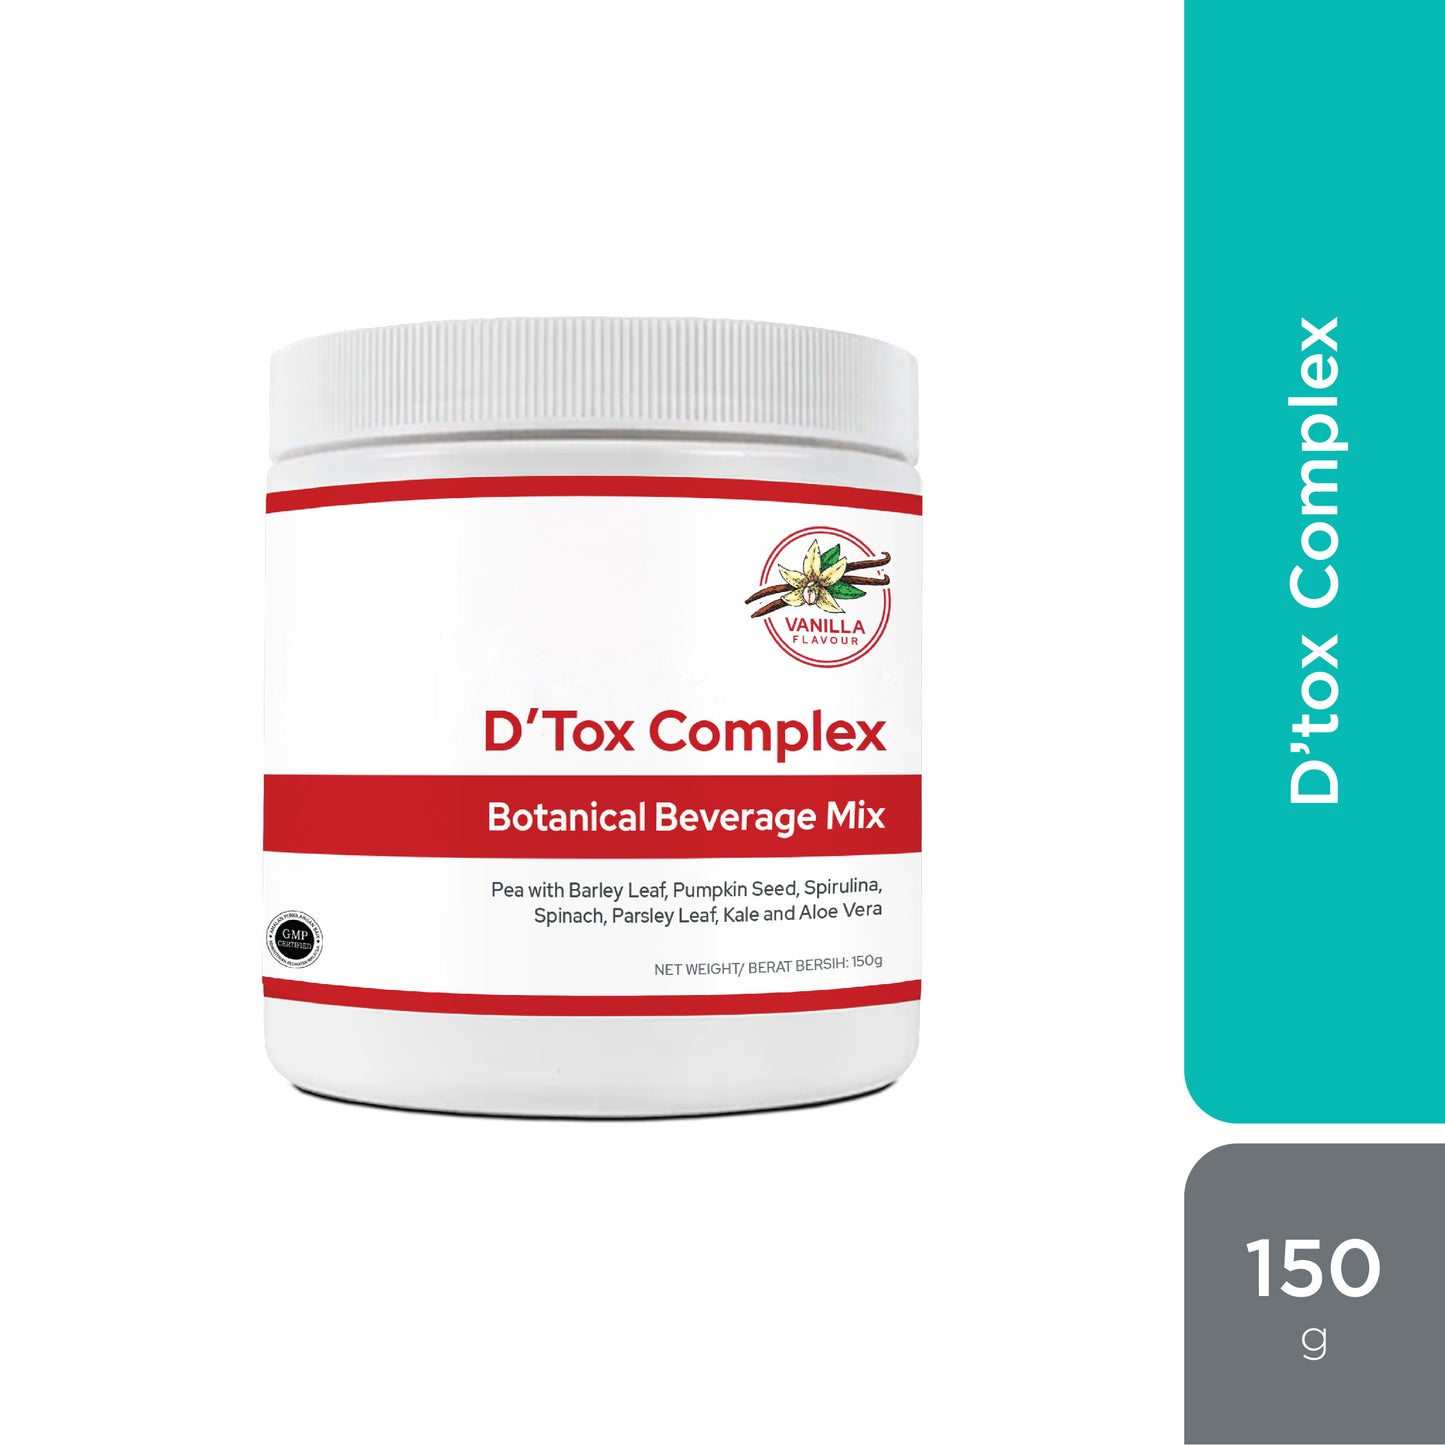 D'Tox Complex